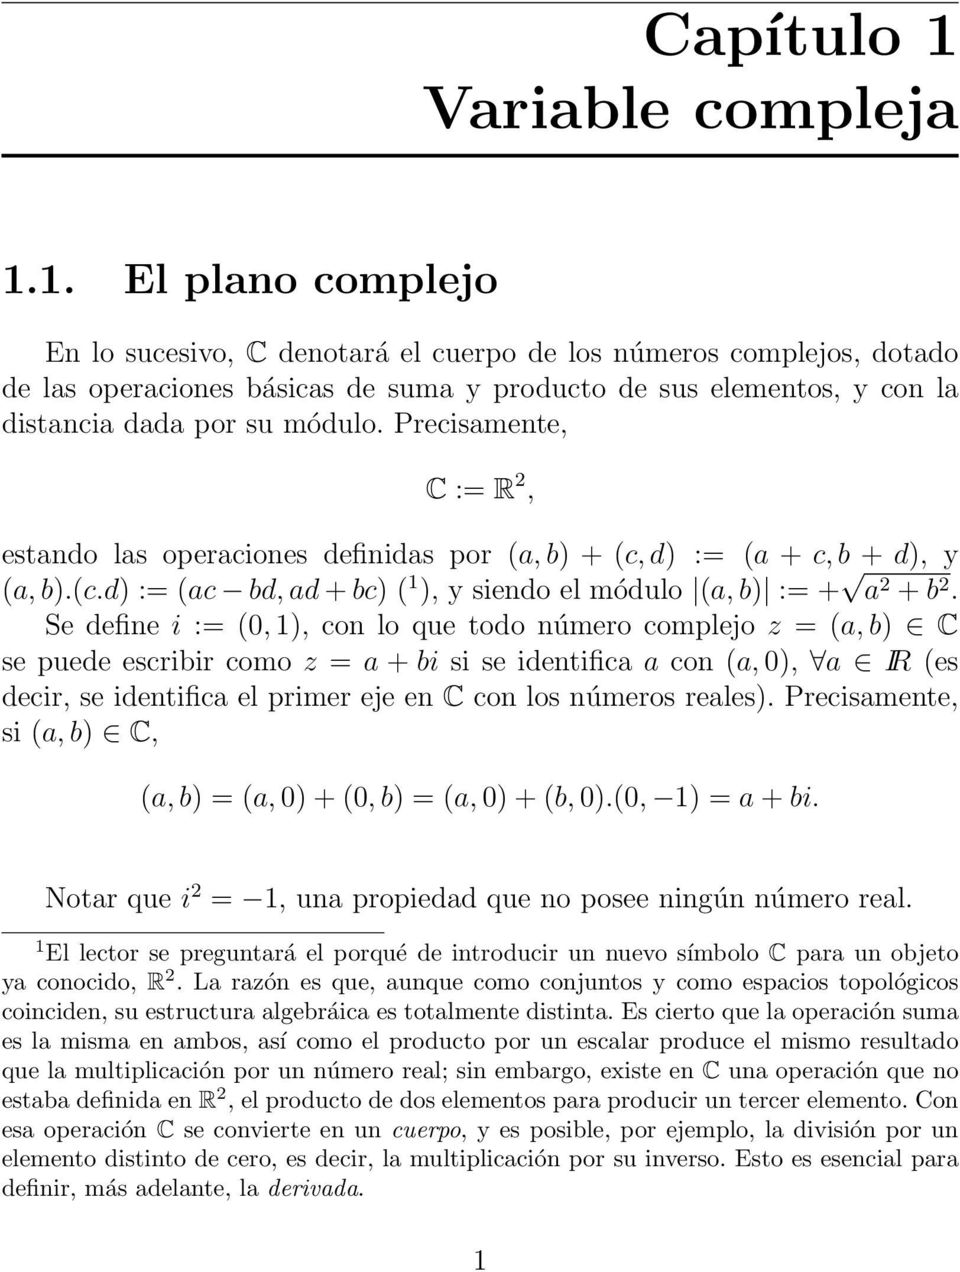 1. El plano complejo En lo sucesivo, C denotará el cuerpo de los números complejos, dotado de las operaciones básicas de suma y producto de sus elementos, y con la distancia dada por su módulo.